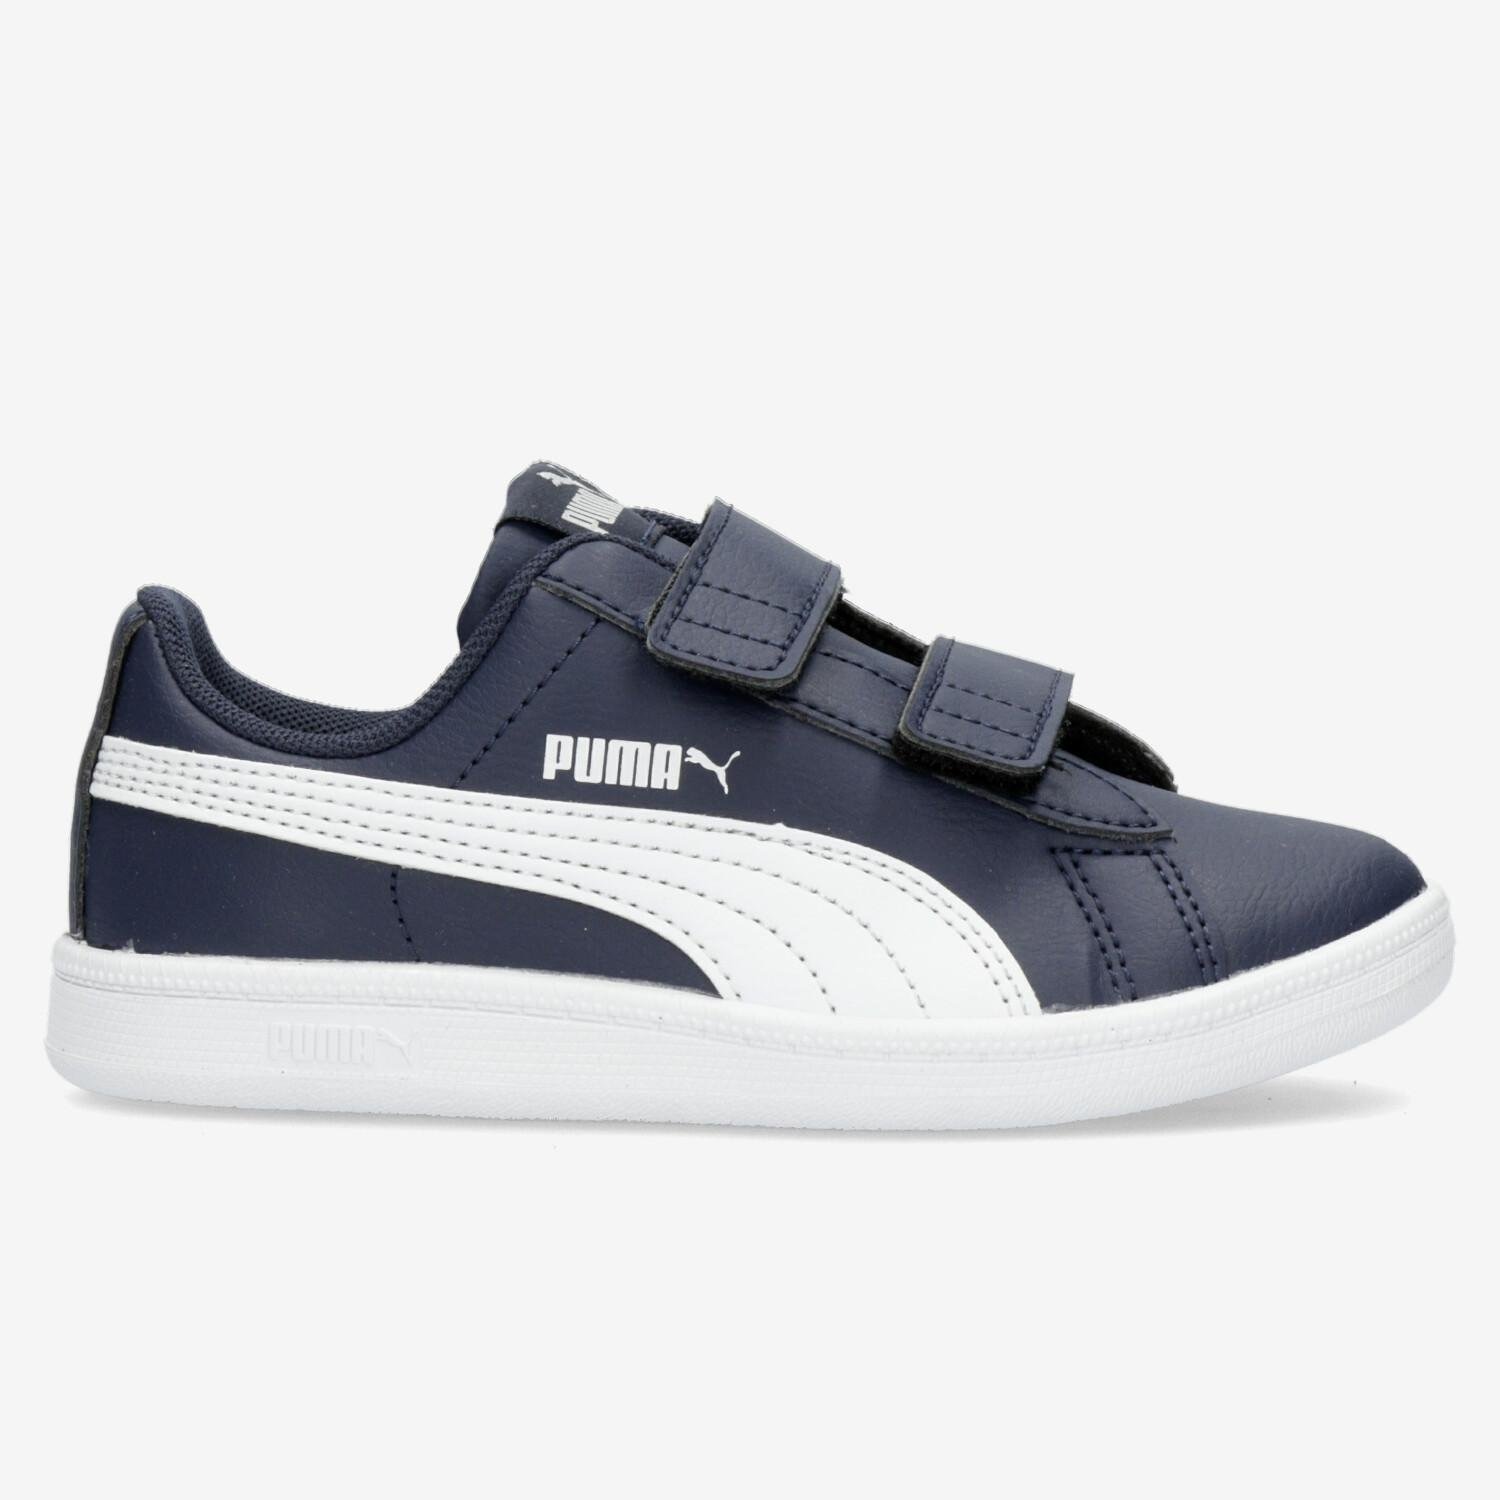 Puma Puma up sneakers blauw/wit kinderen kinderen